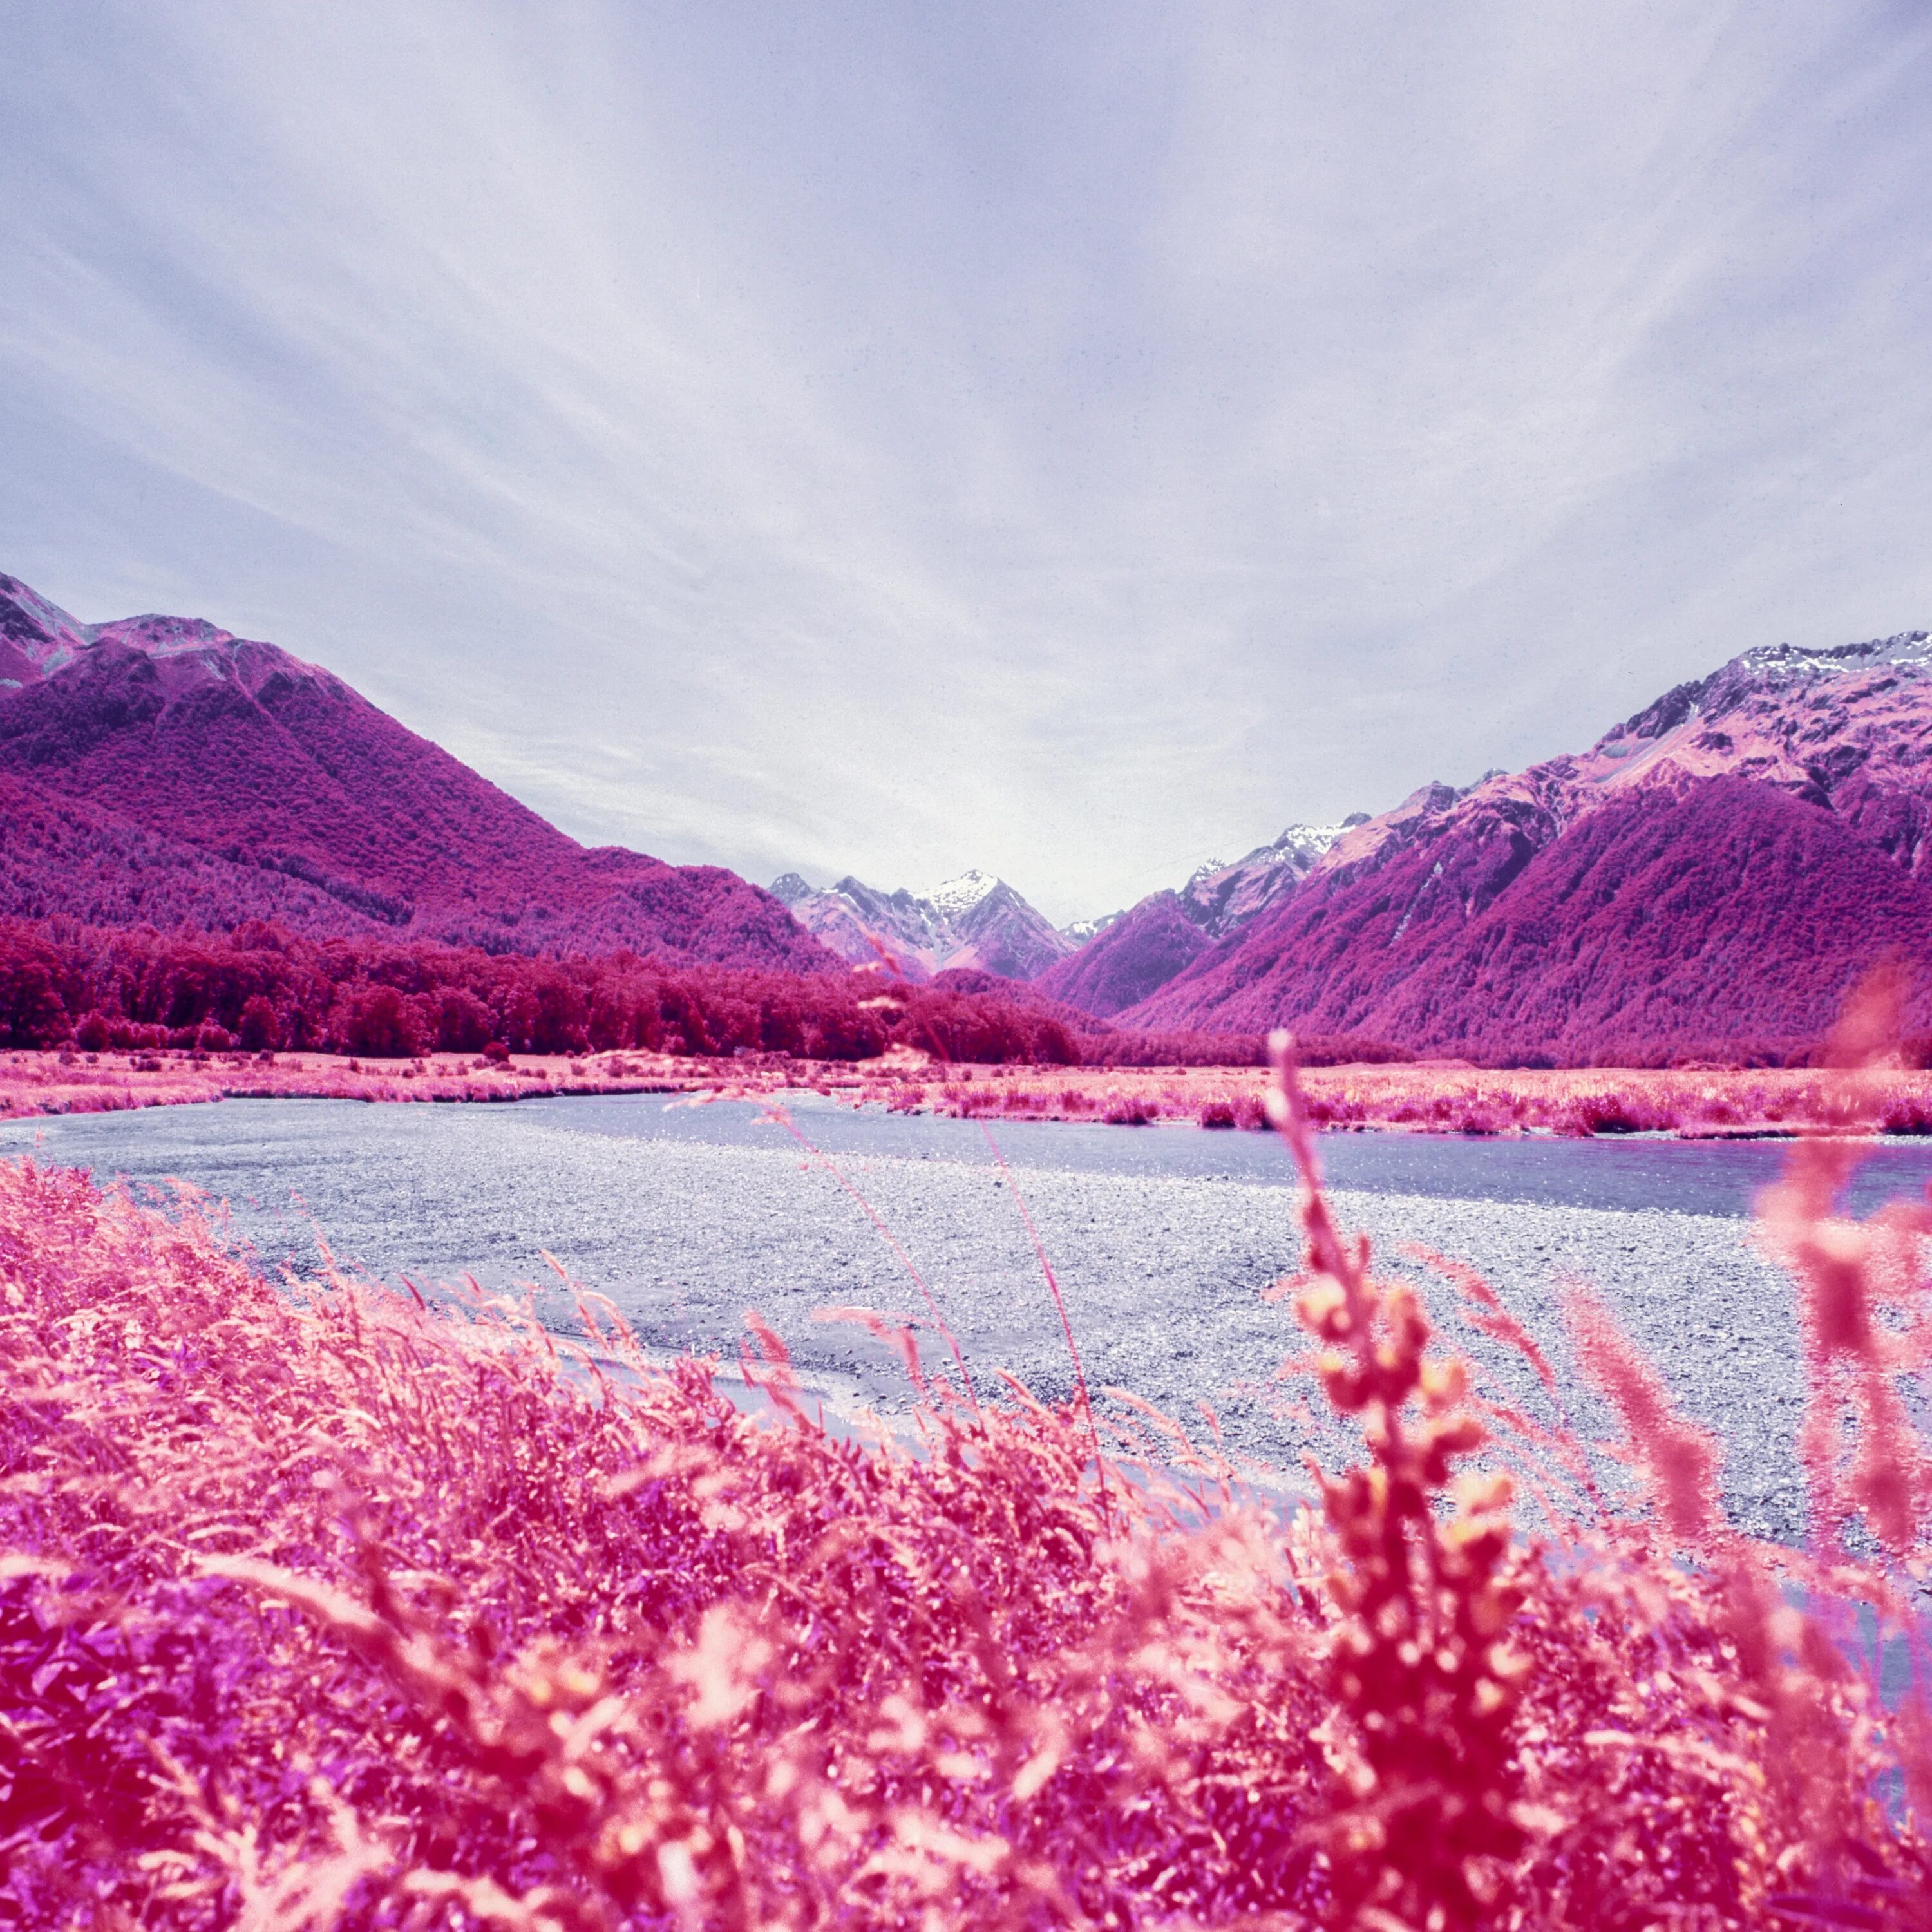 Инстаграмм природа. Красивая природа. Необычные пейзажи. Розовый пейзаж. Природа для инстаграмма.